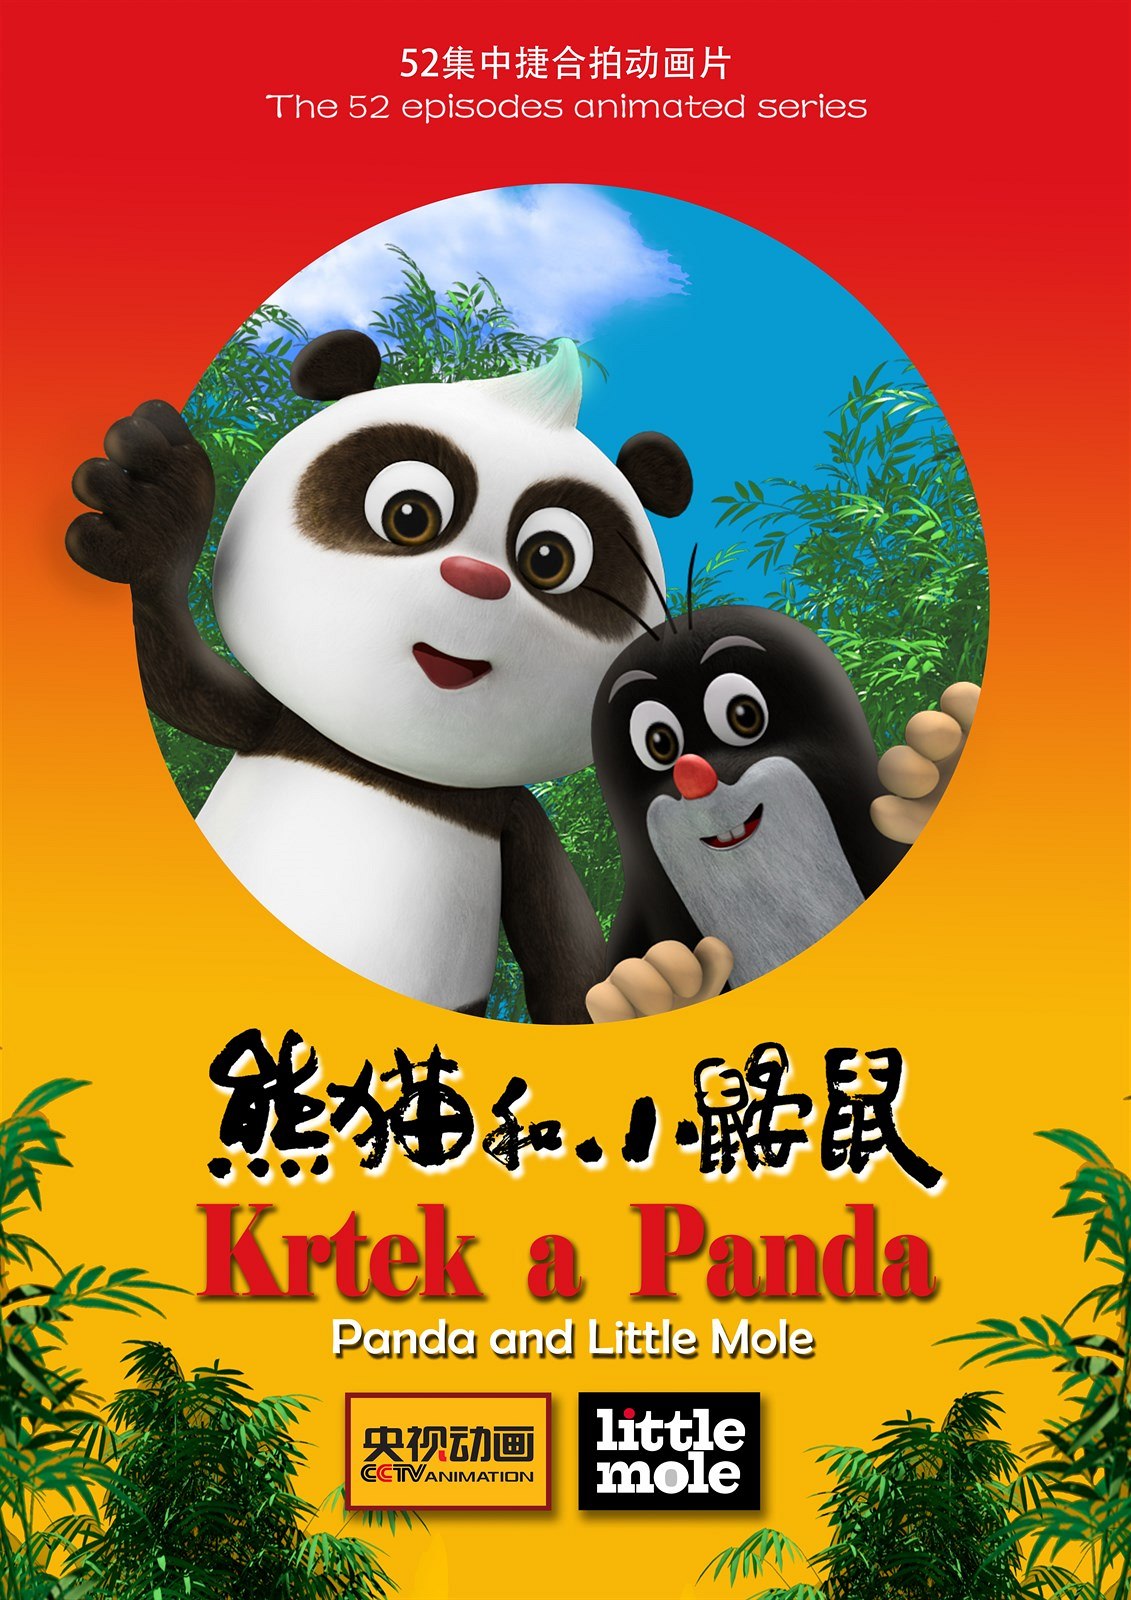 Krtek a Panda / The Little Mole and Panda (2016 - 2017) - Warez Fórum  WAR4ALL